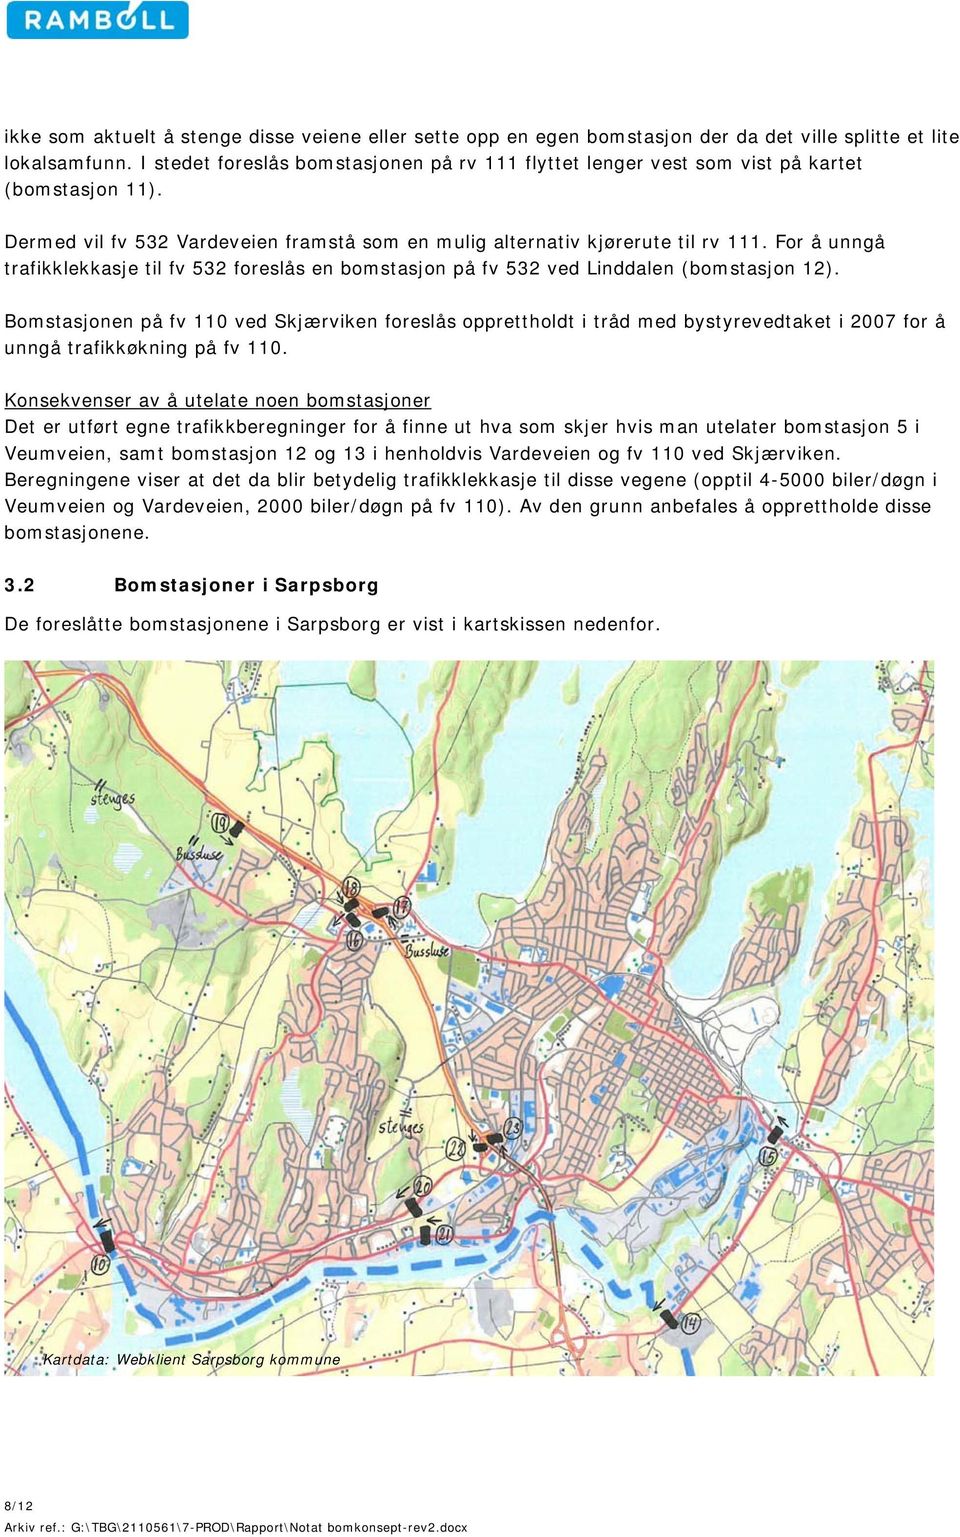 For å unngå trafikklekkasje til fv 532 foreslås en bomstasjon på fv 532 ved Linddalen (bomstasjon 12).